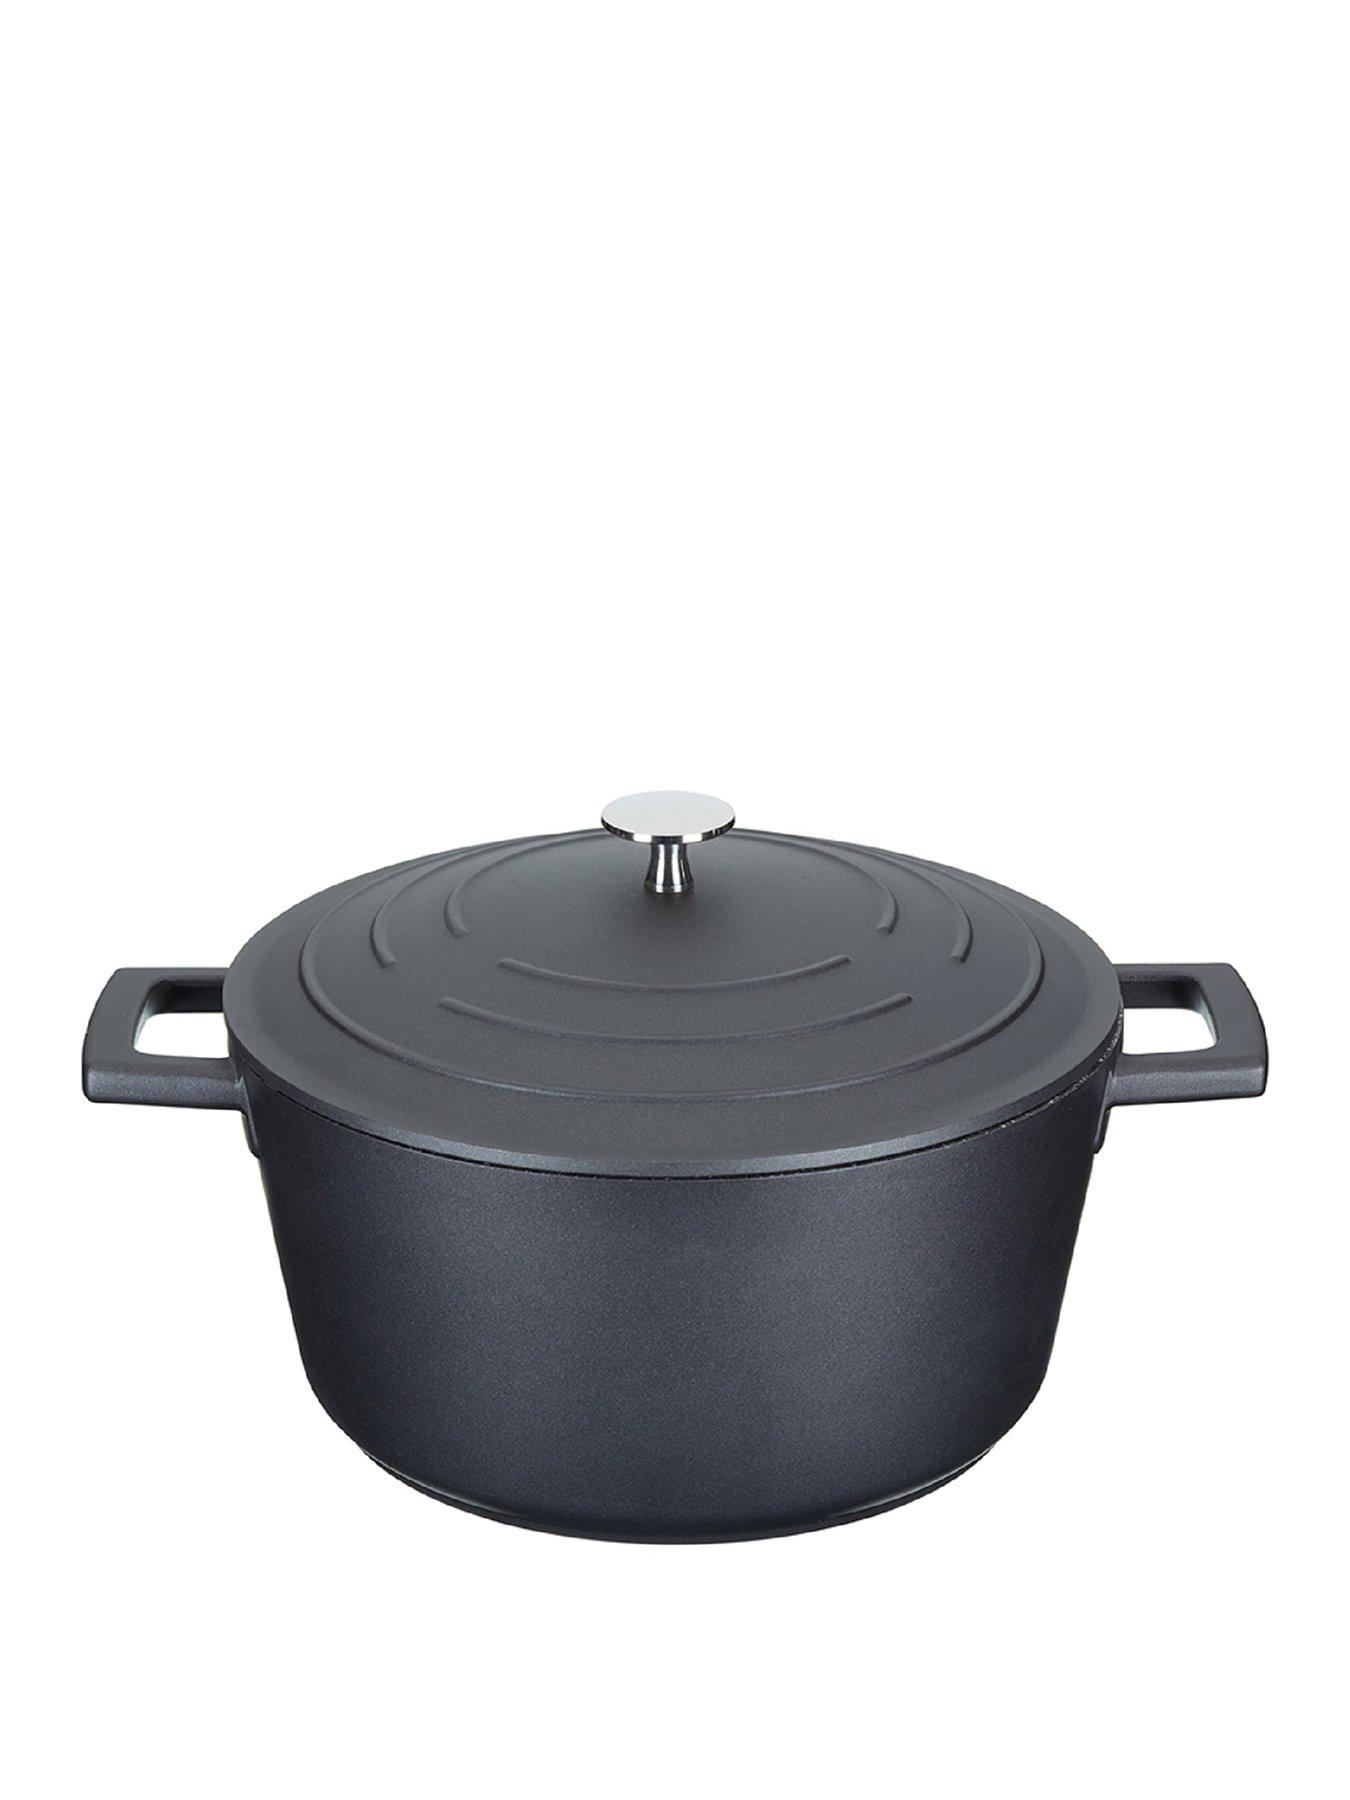 https://media.very.ie/i/littlewoodsireland/Q7KE4_SQ1_0000000004_BLACK_SLf/masterclass-cast-aluminium-24-cm-casserole-dish-with-lid.jpg?$180x240_retinamobilex2$